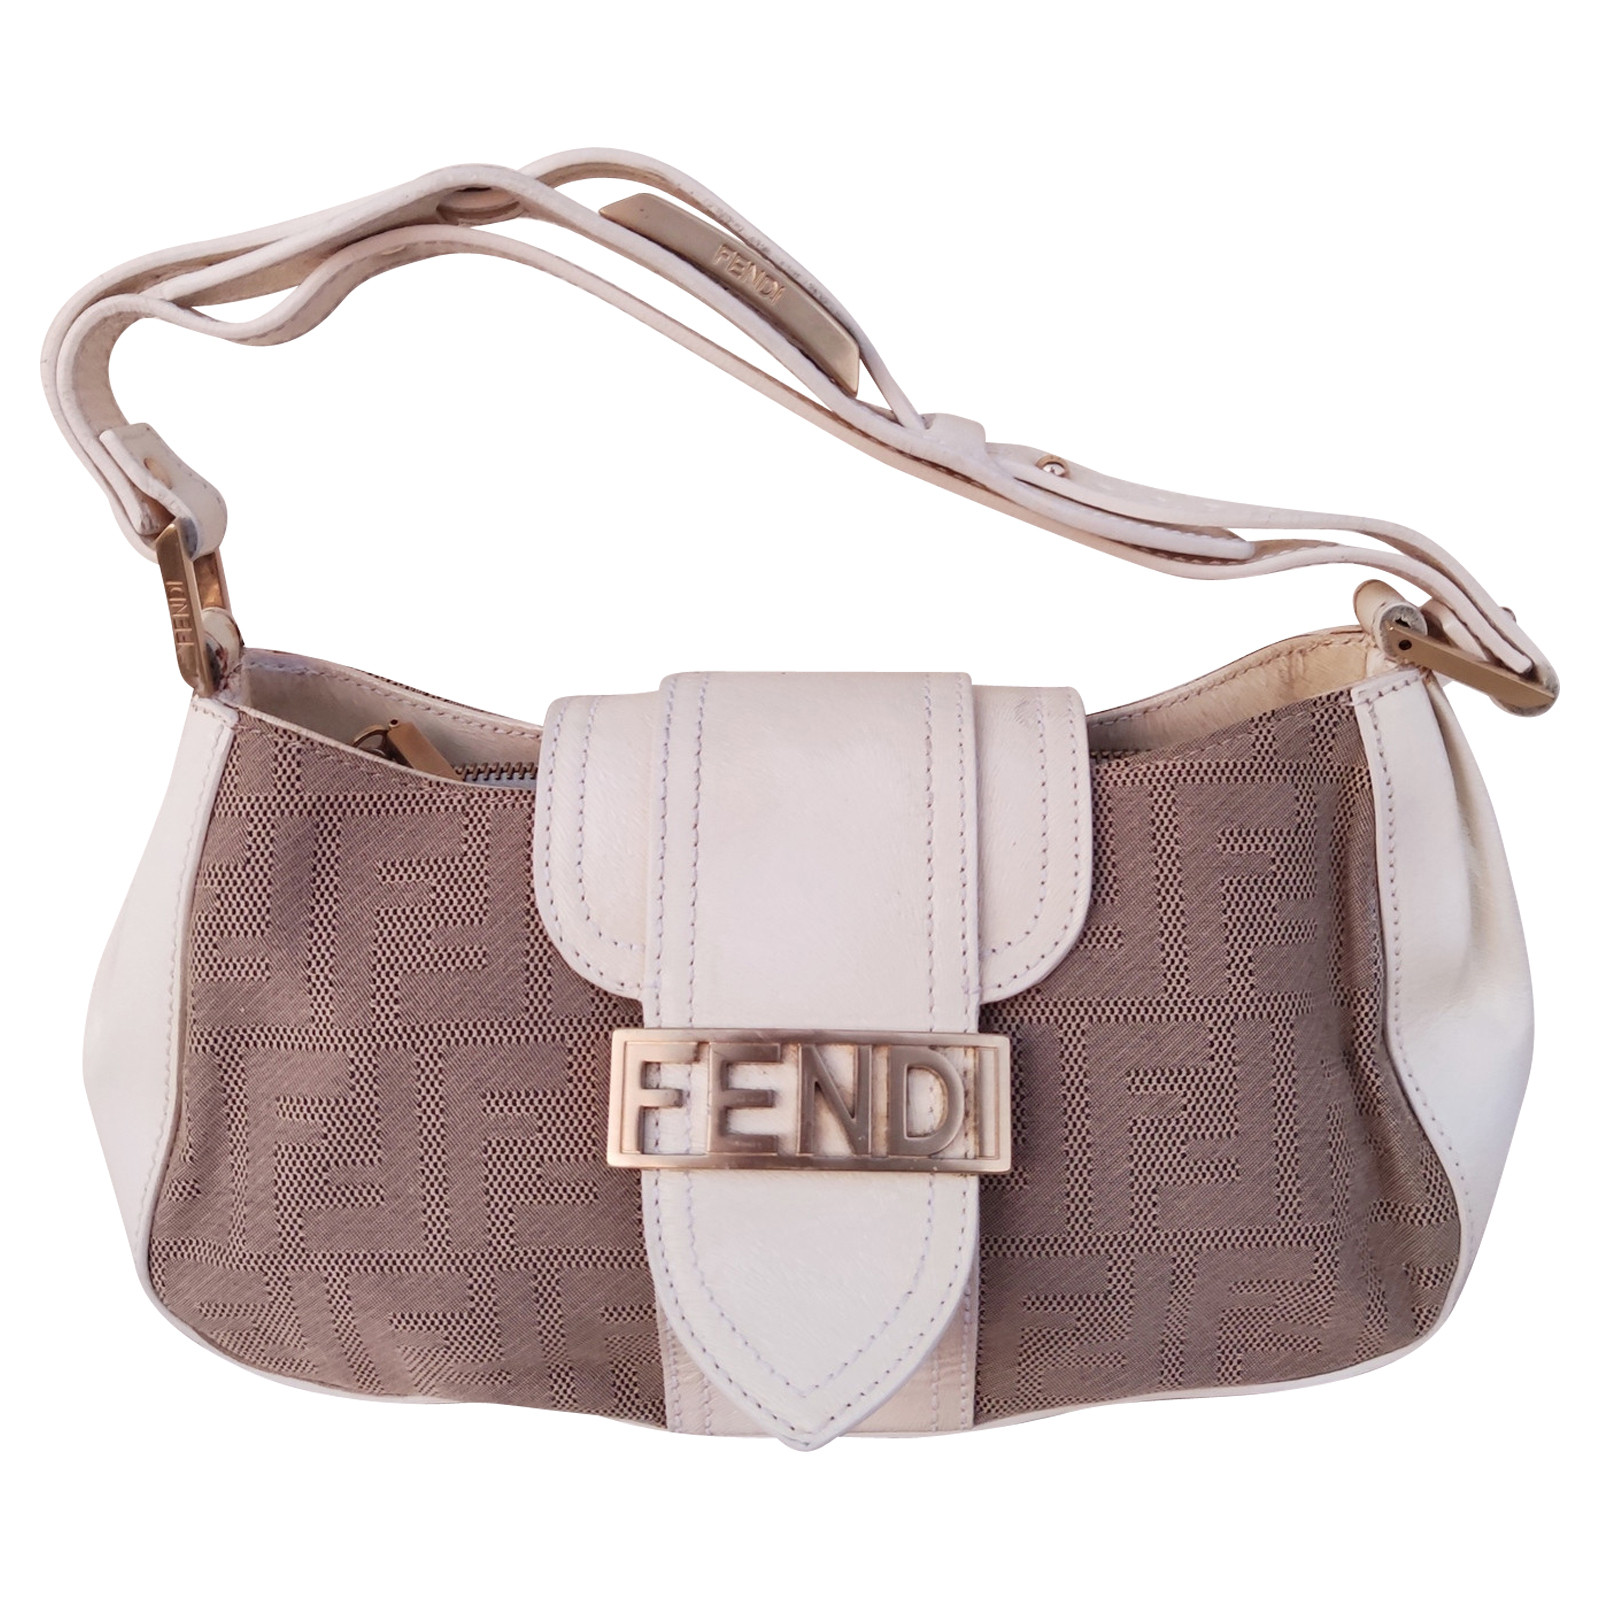 Fendi Handtasche Second Hand Fendi Handtasche Gebraucht Kaufen Fur 440